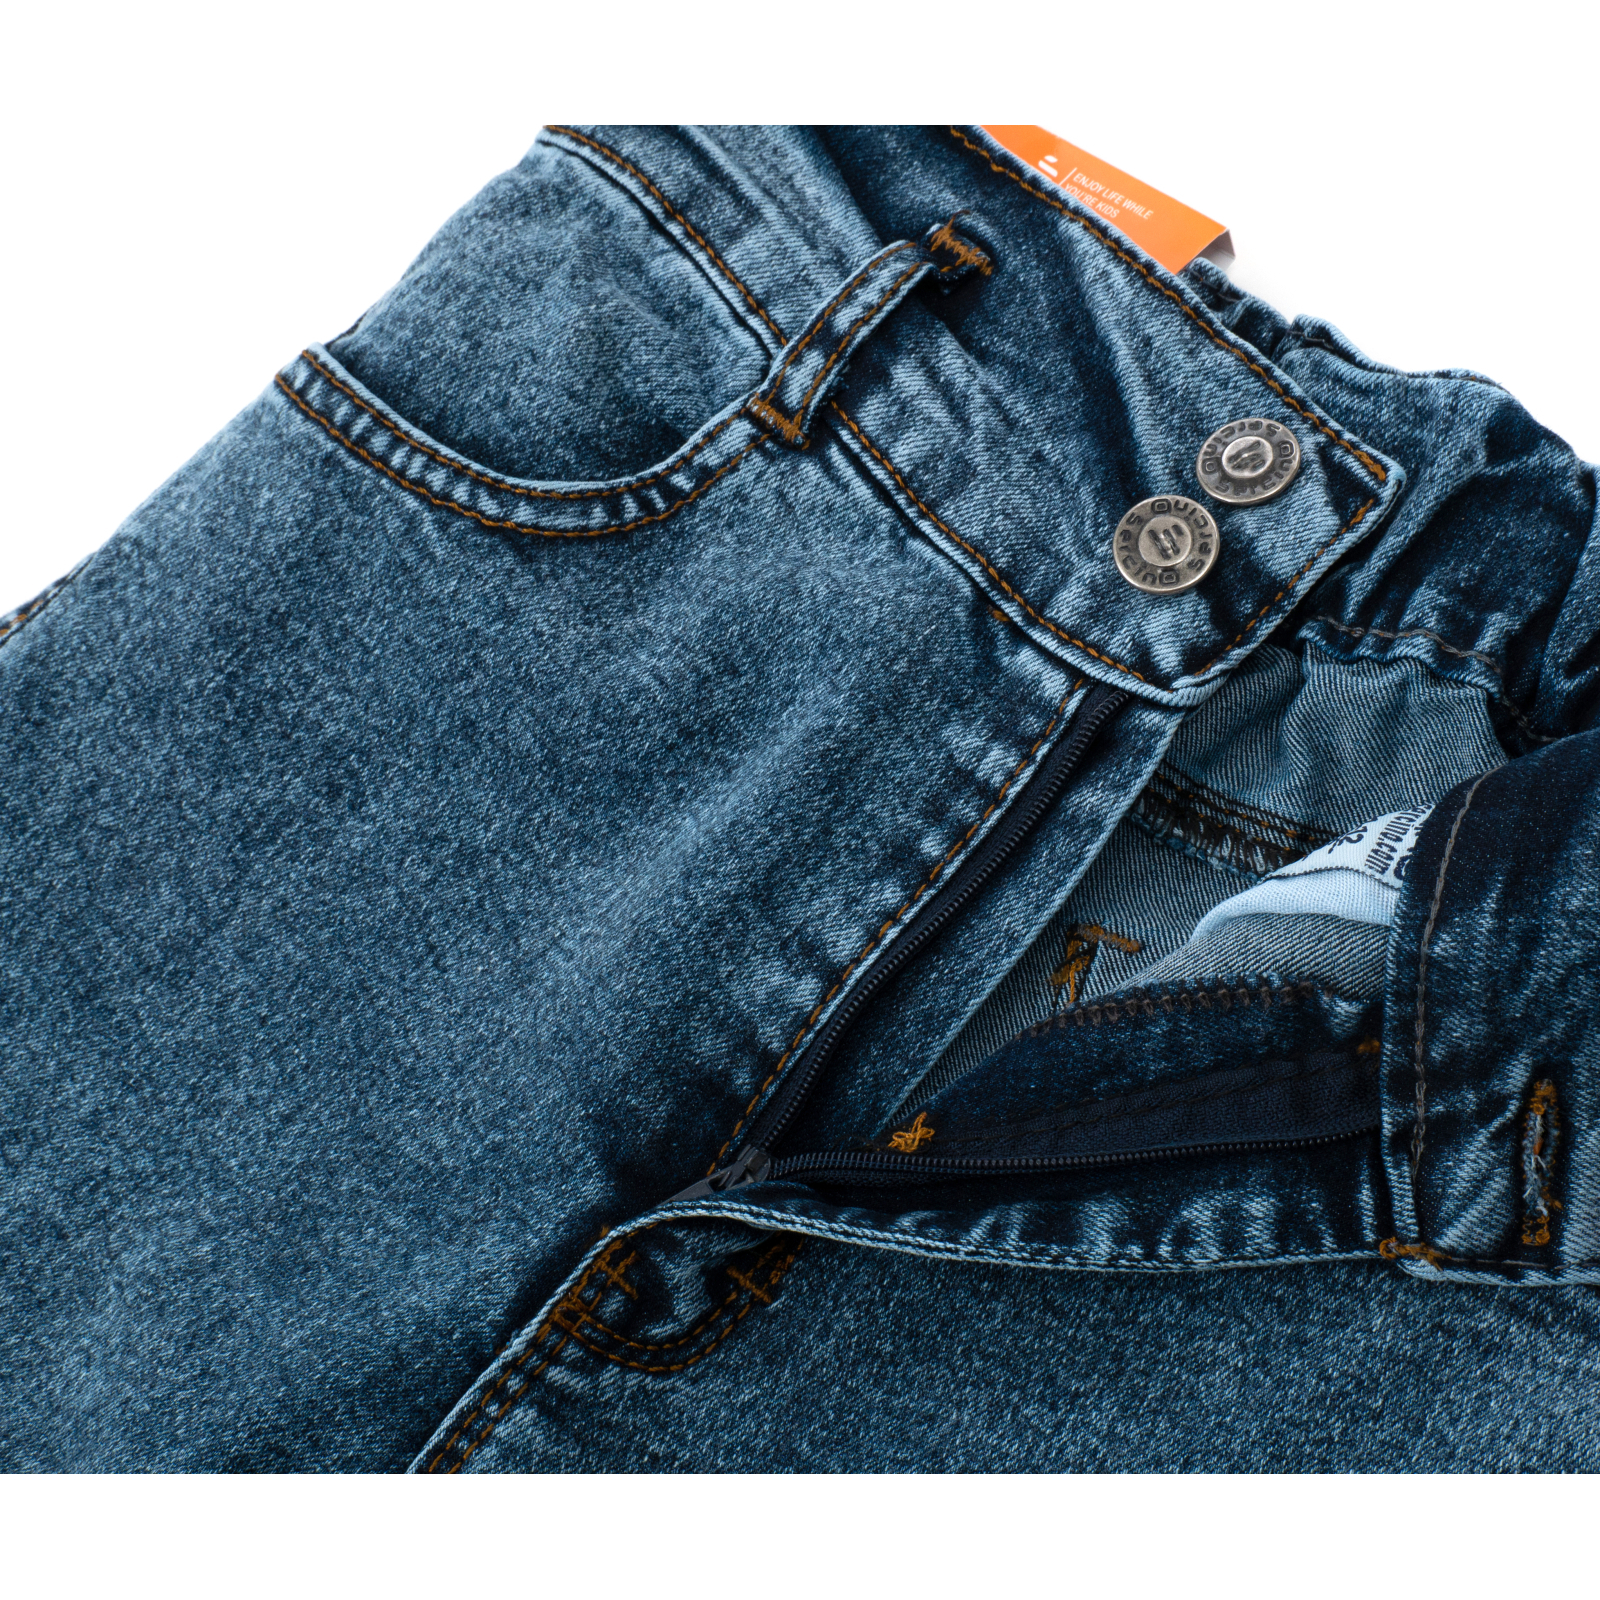 Джинсы Sercino с карманами (59654-146G-blue) изображение 6